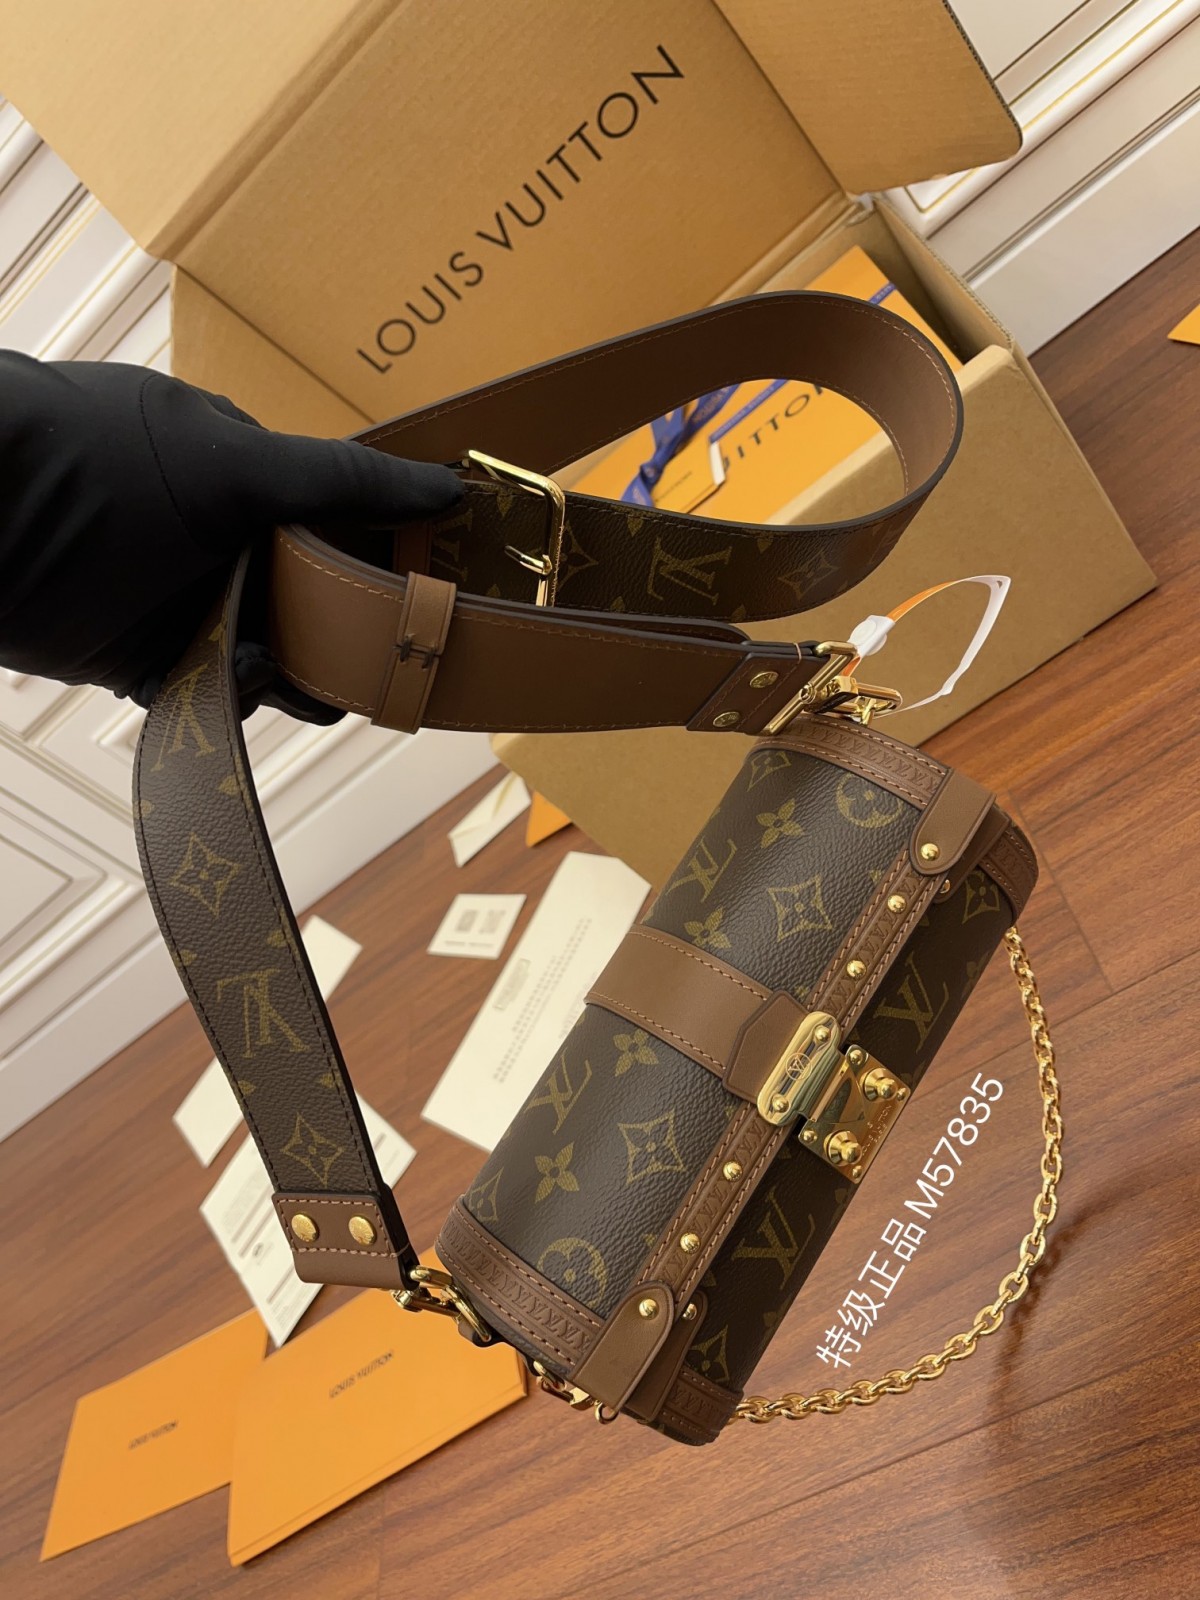 Сундучок Louis Vuitton Papillon, який вам сподобається з першого погляду (останнє 2022 року) - Інтернет-магазин підробленої сумки Louis Vuitton найкращої якості, копія дизайнерської сумки ru